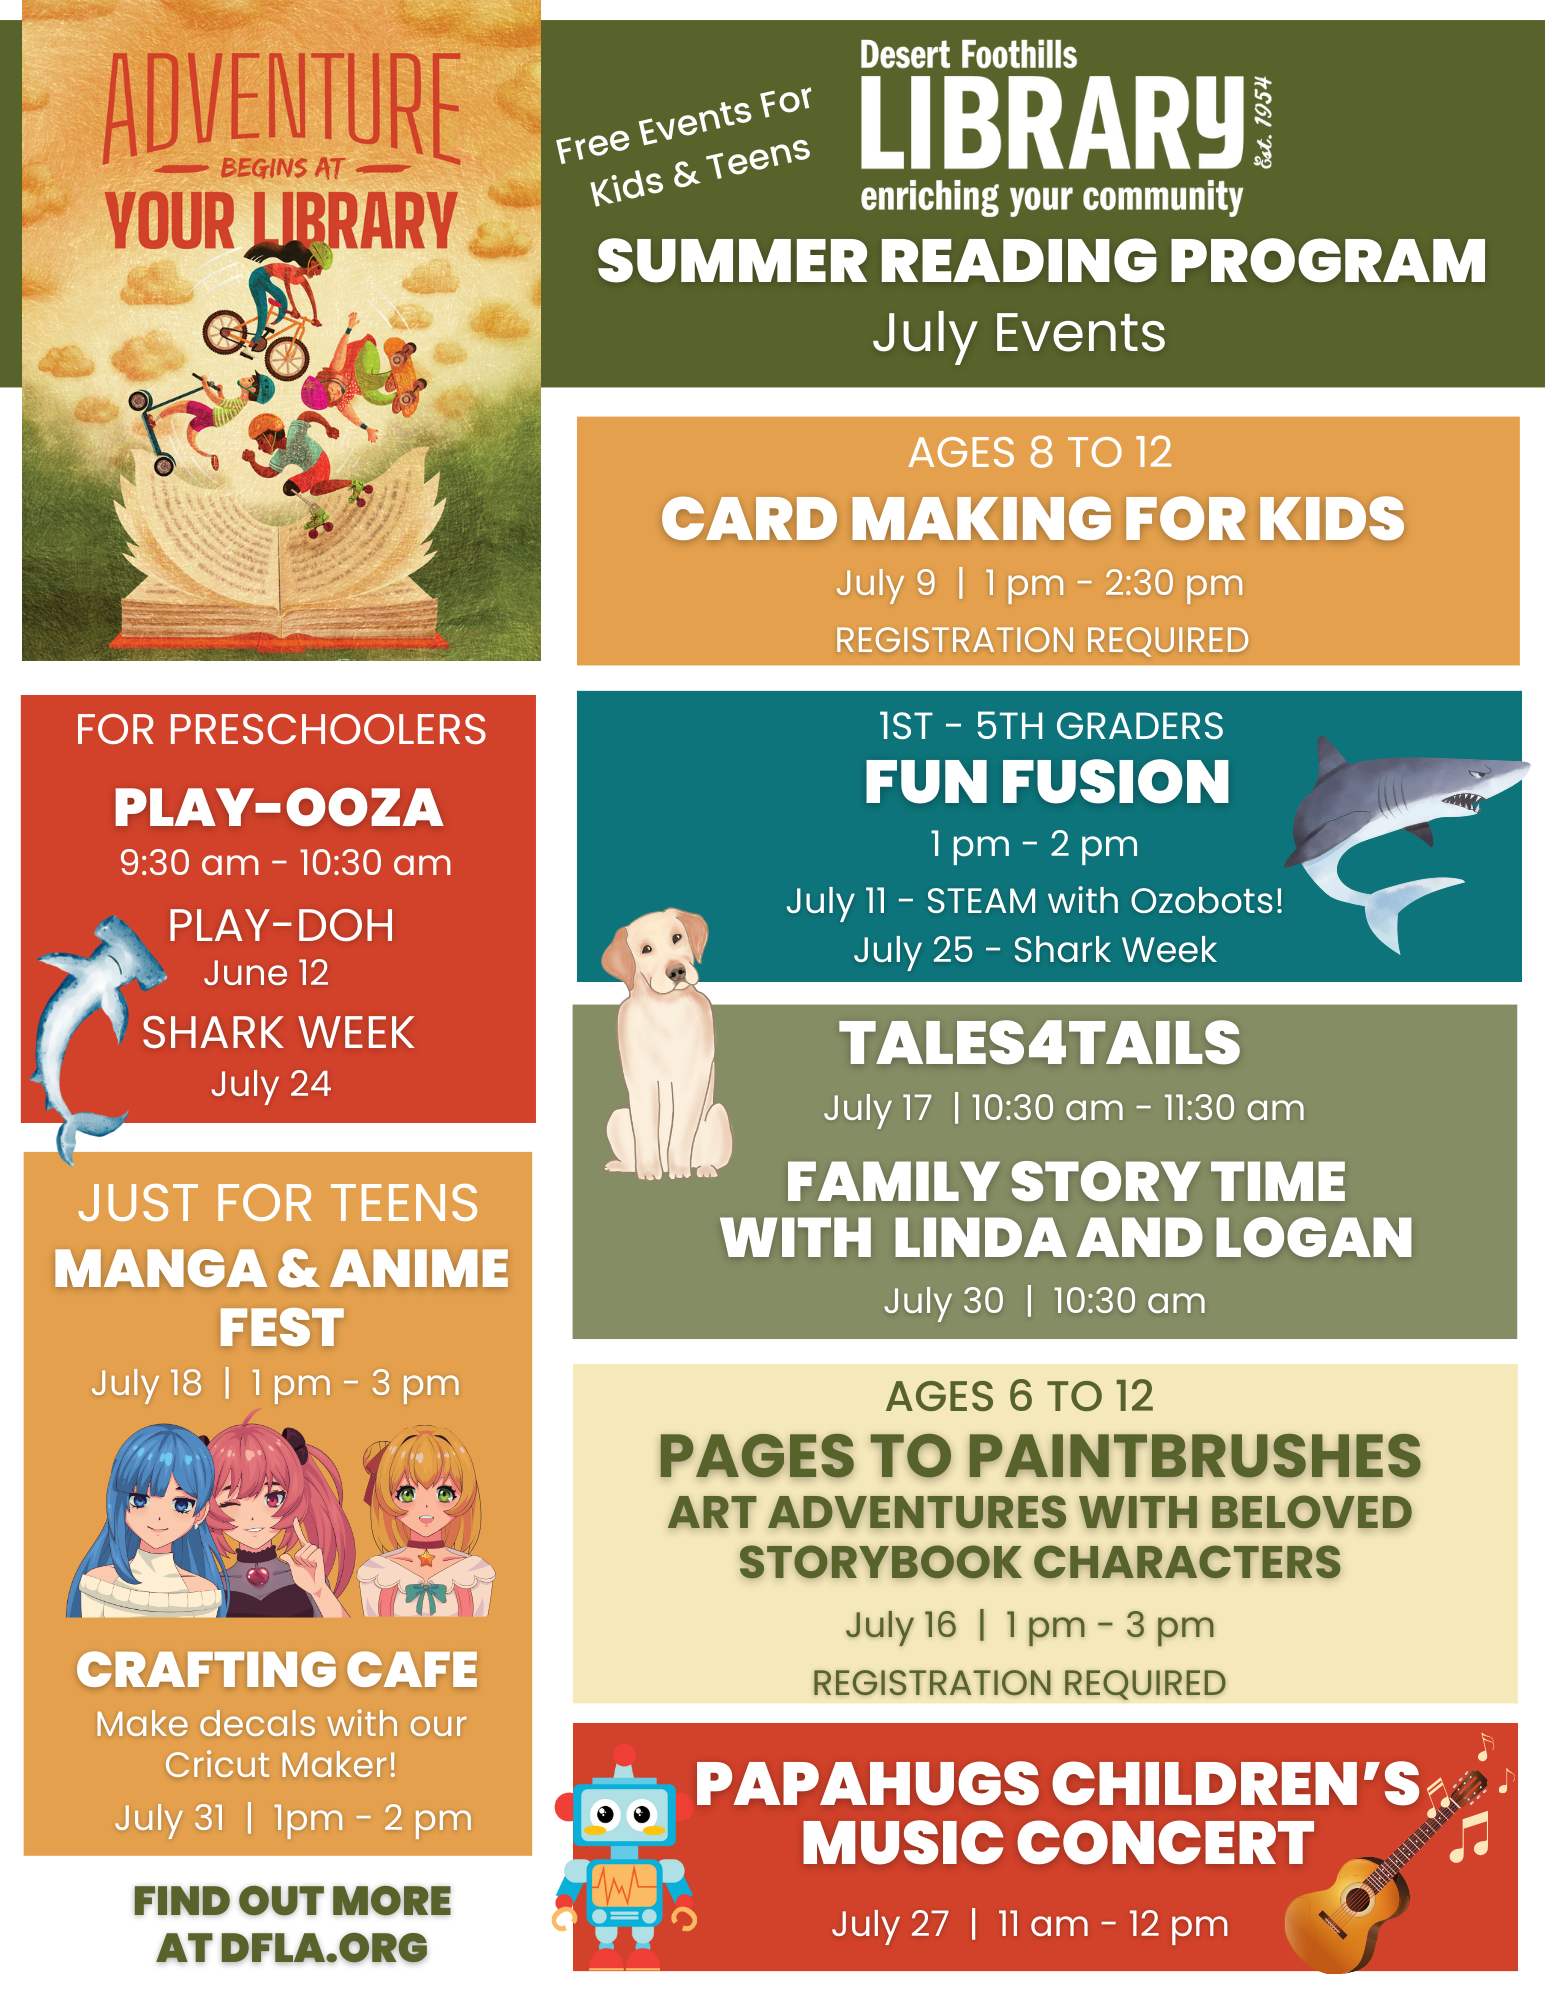 Summer Reading program at the Desert Foothills Library